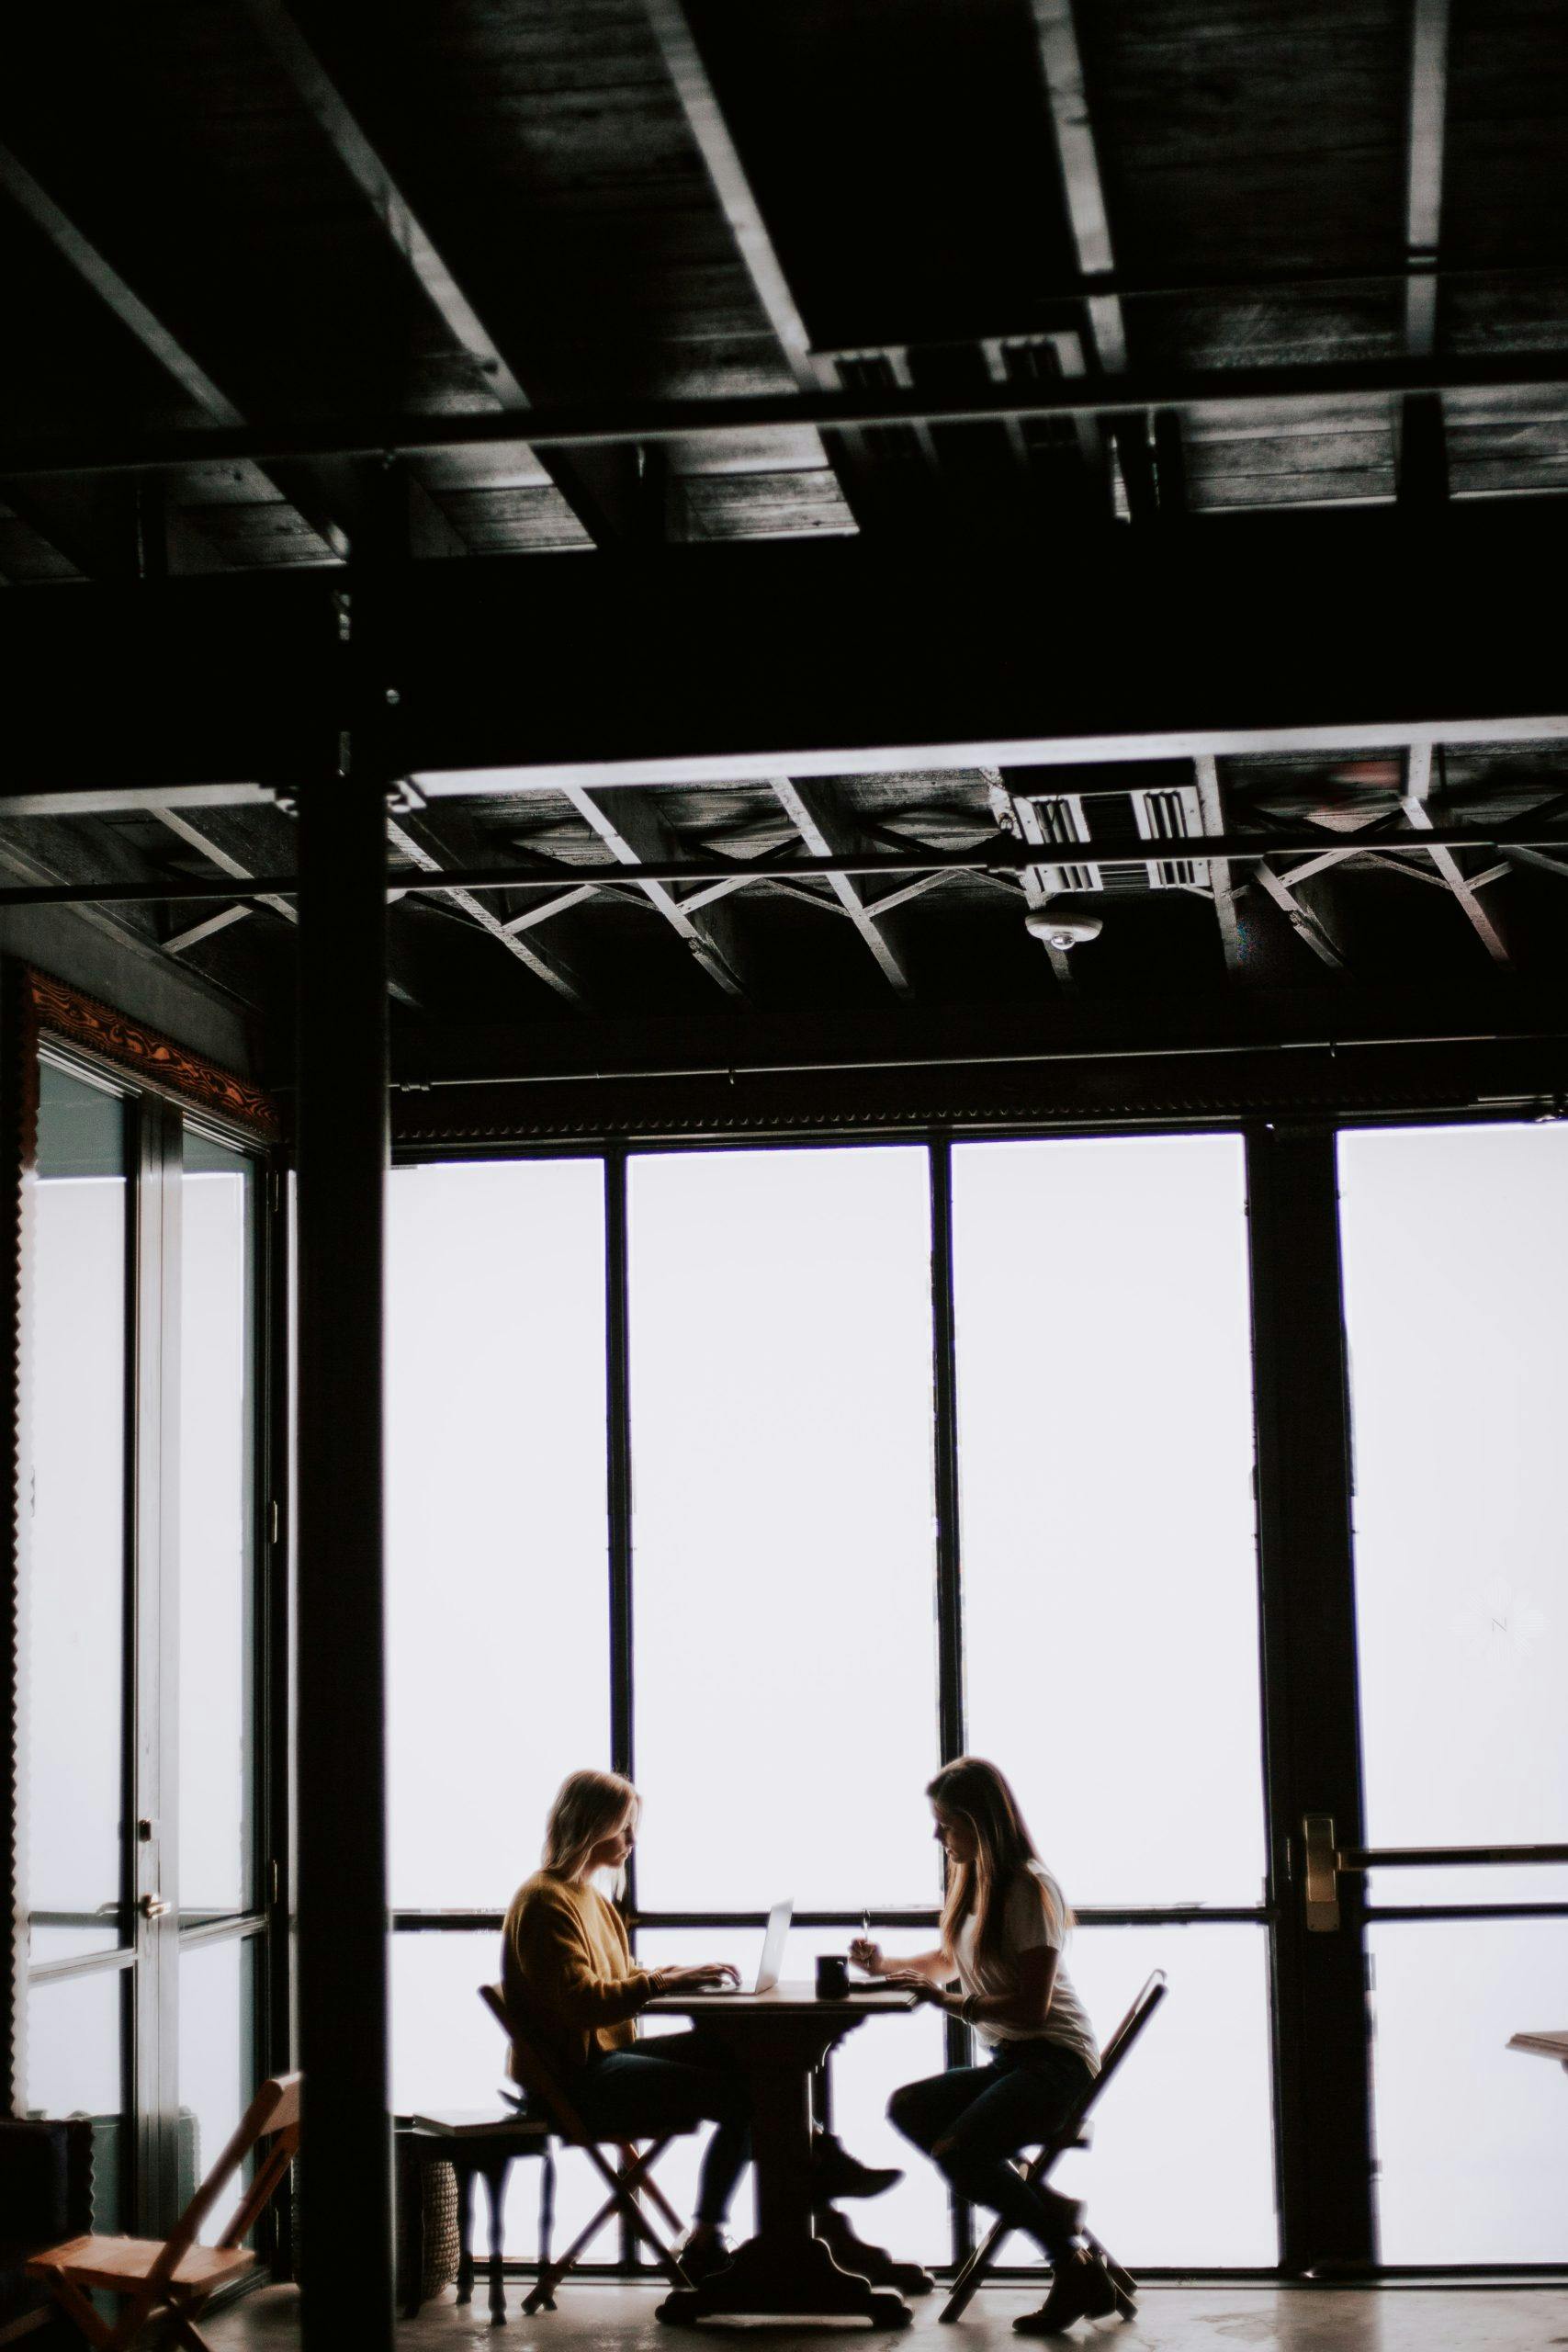 Modern Workplace två kvinnor sitter och arbetar vid ett fönster